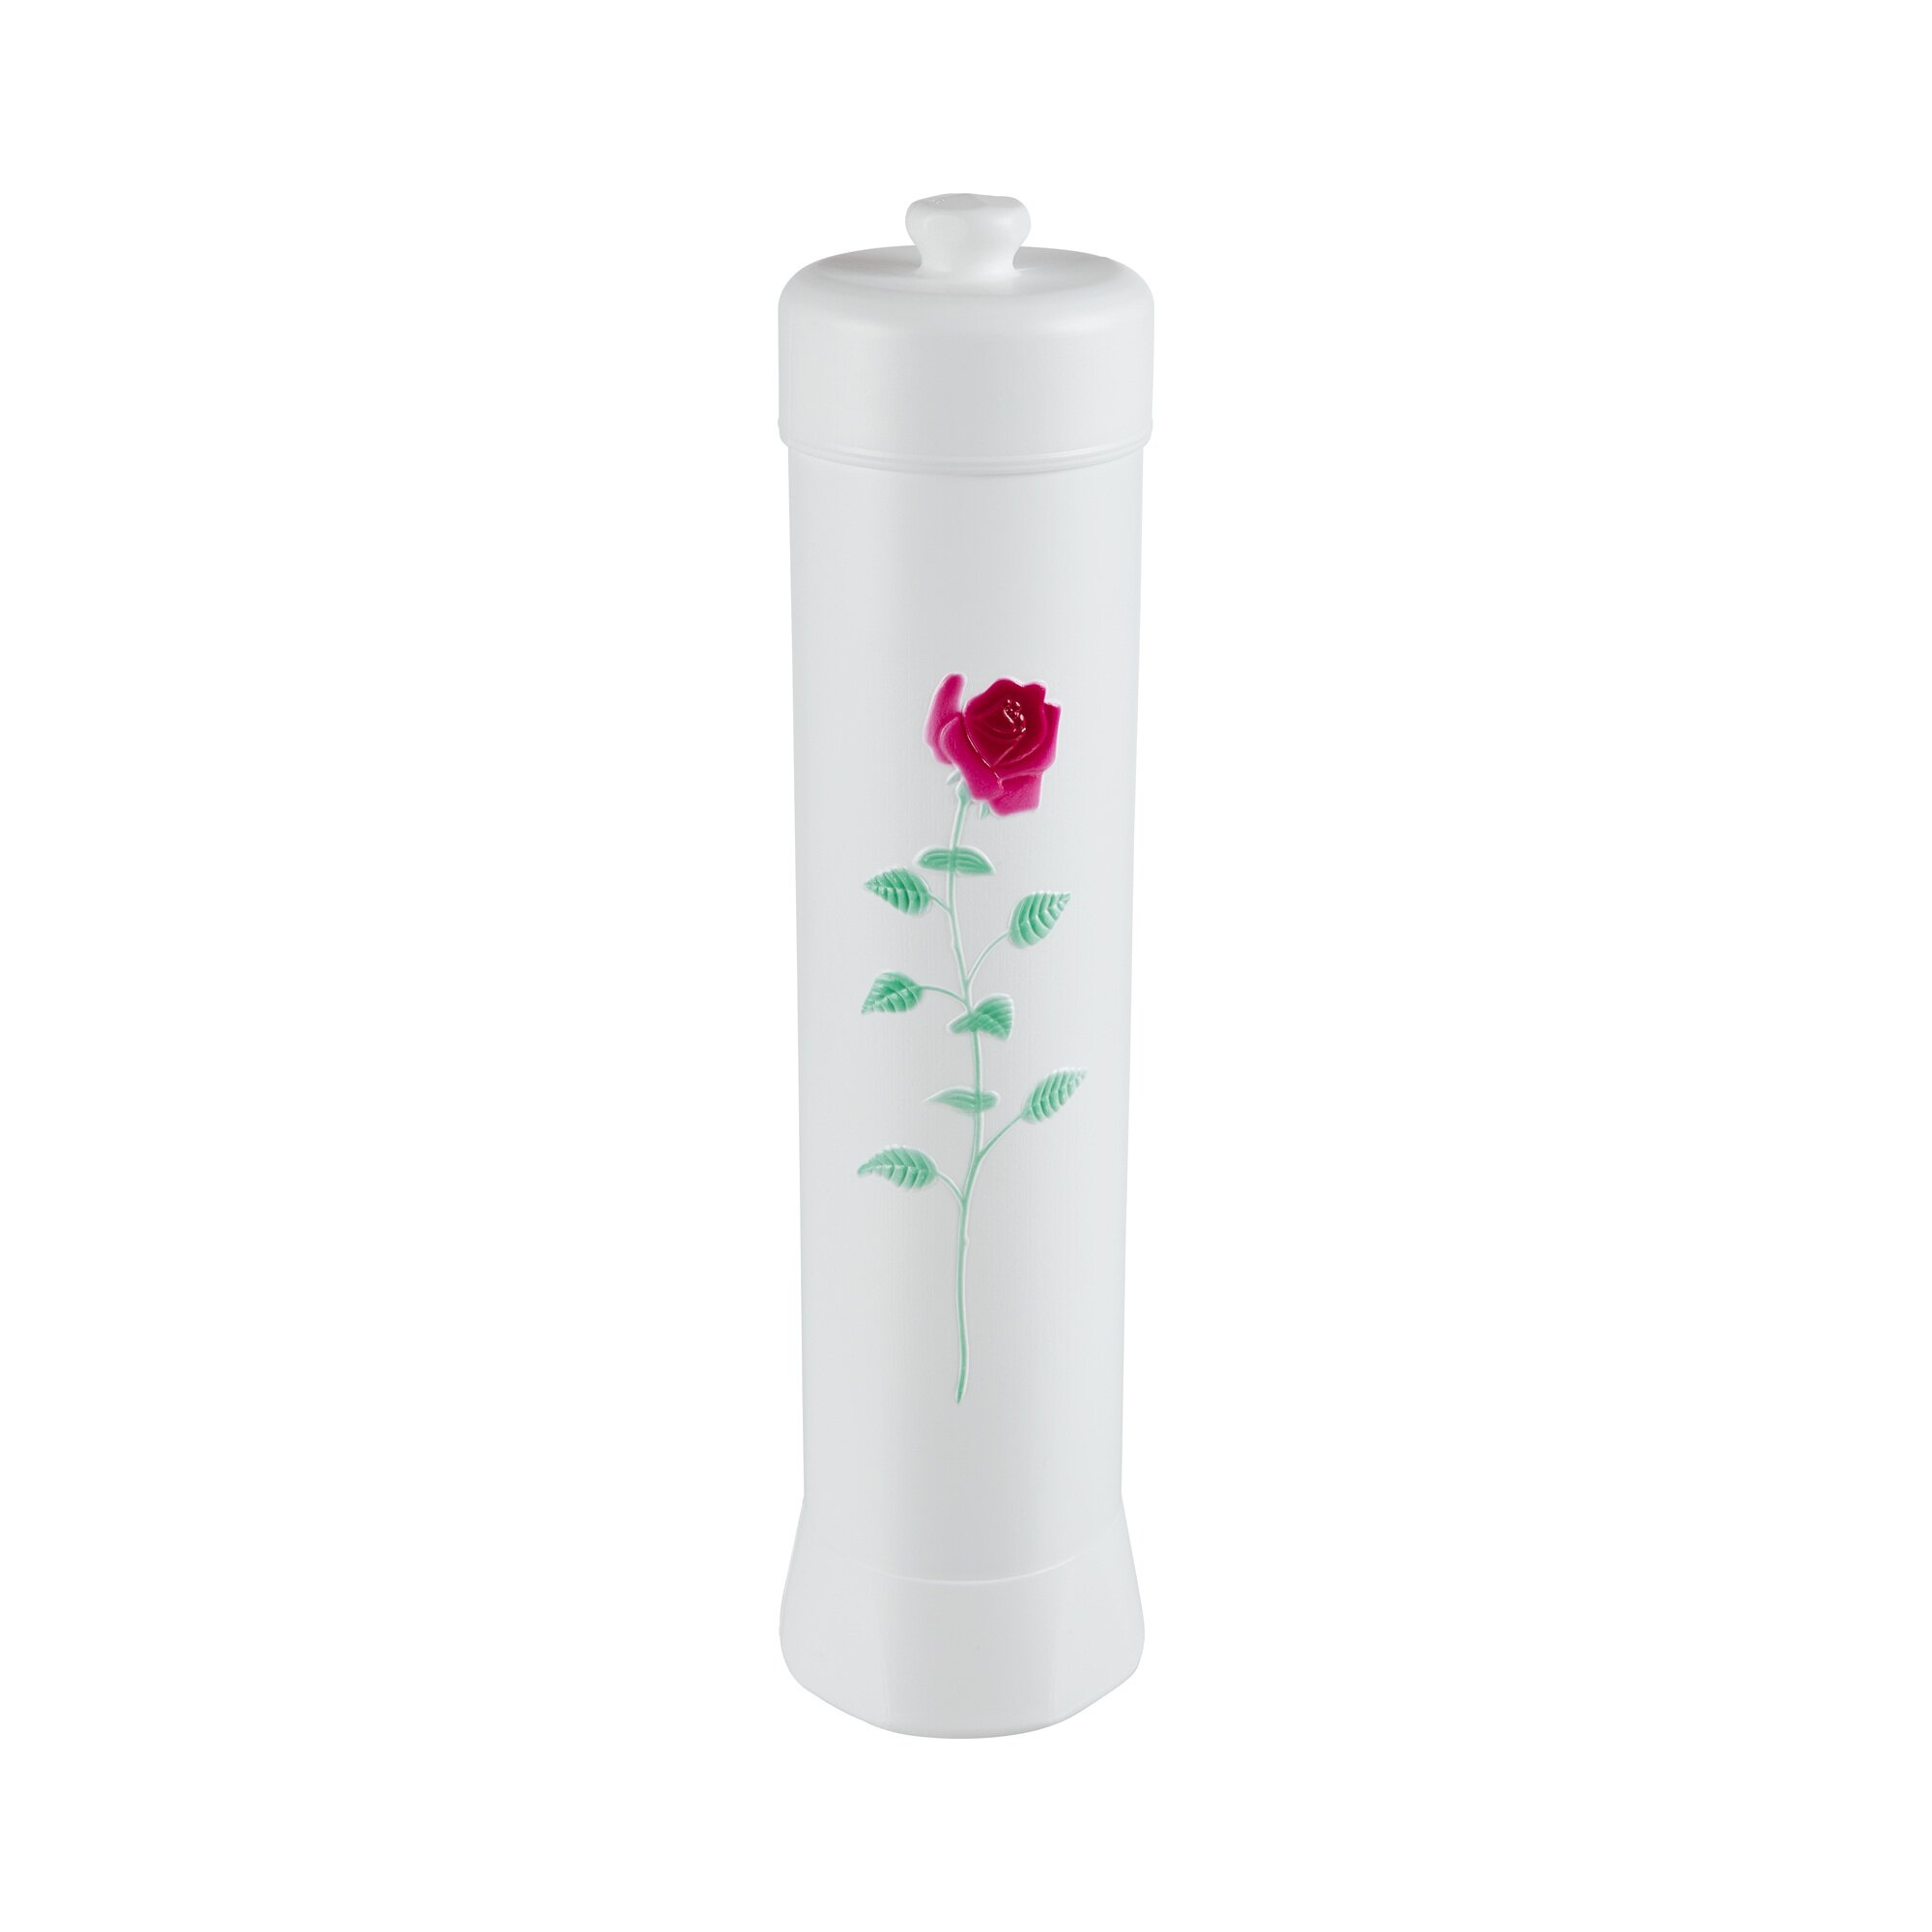 Image of Toilettenpapier-Orga "Rose"